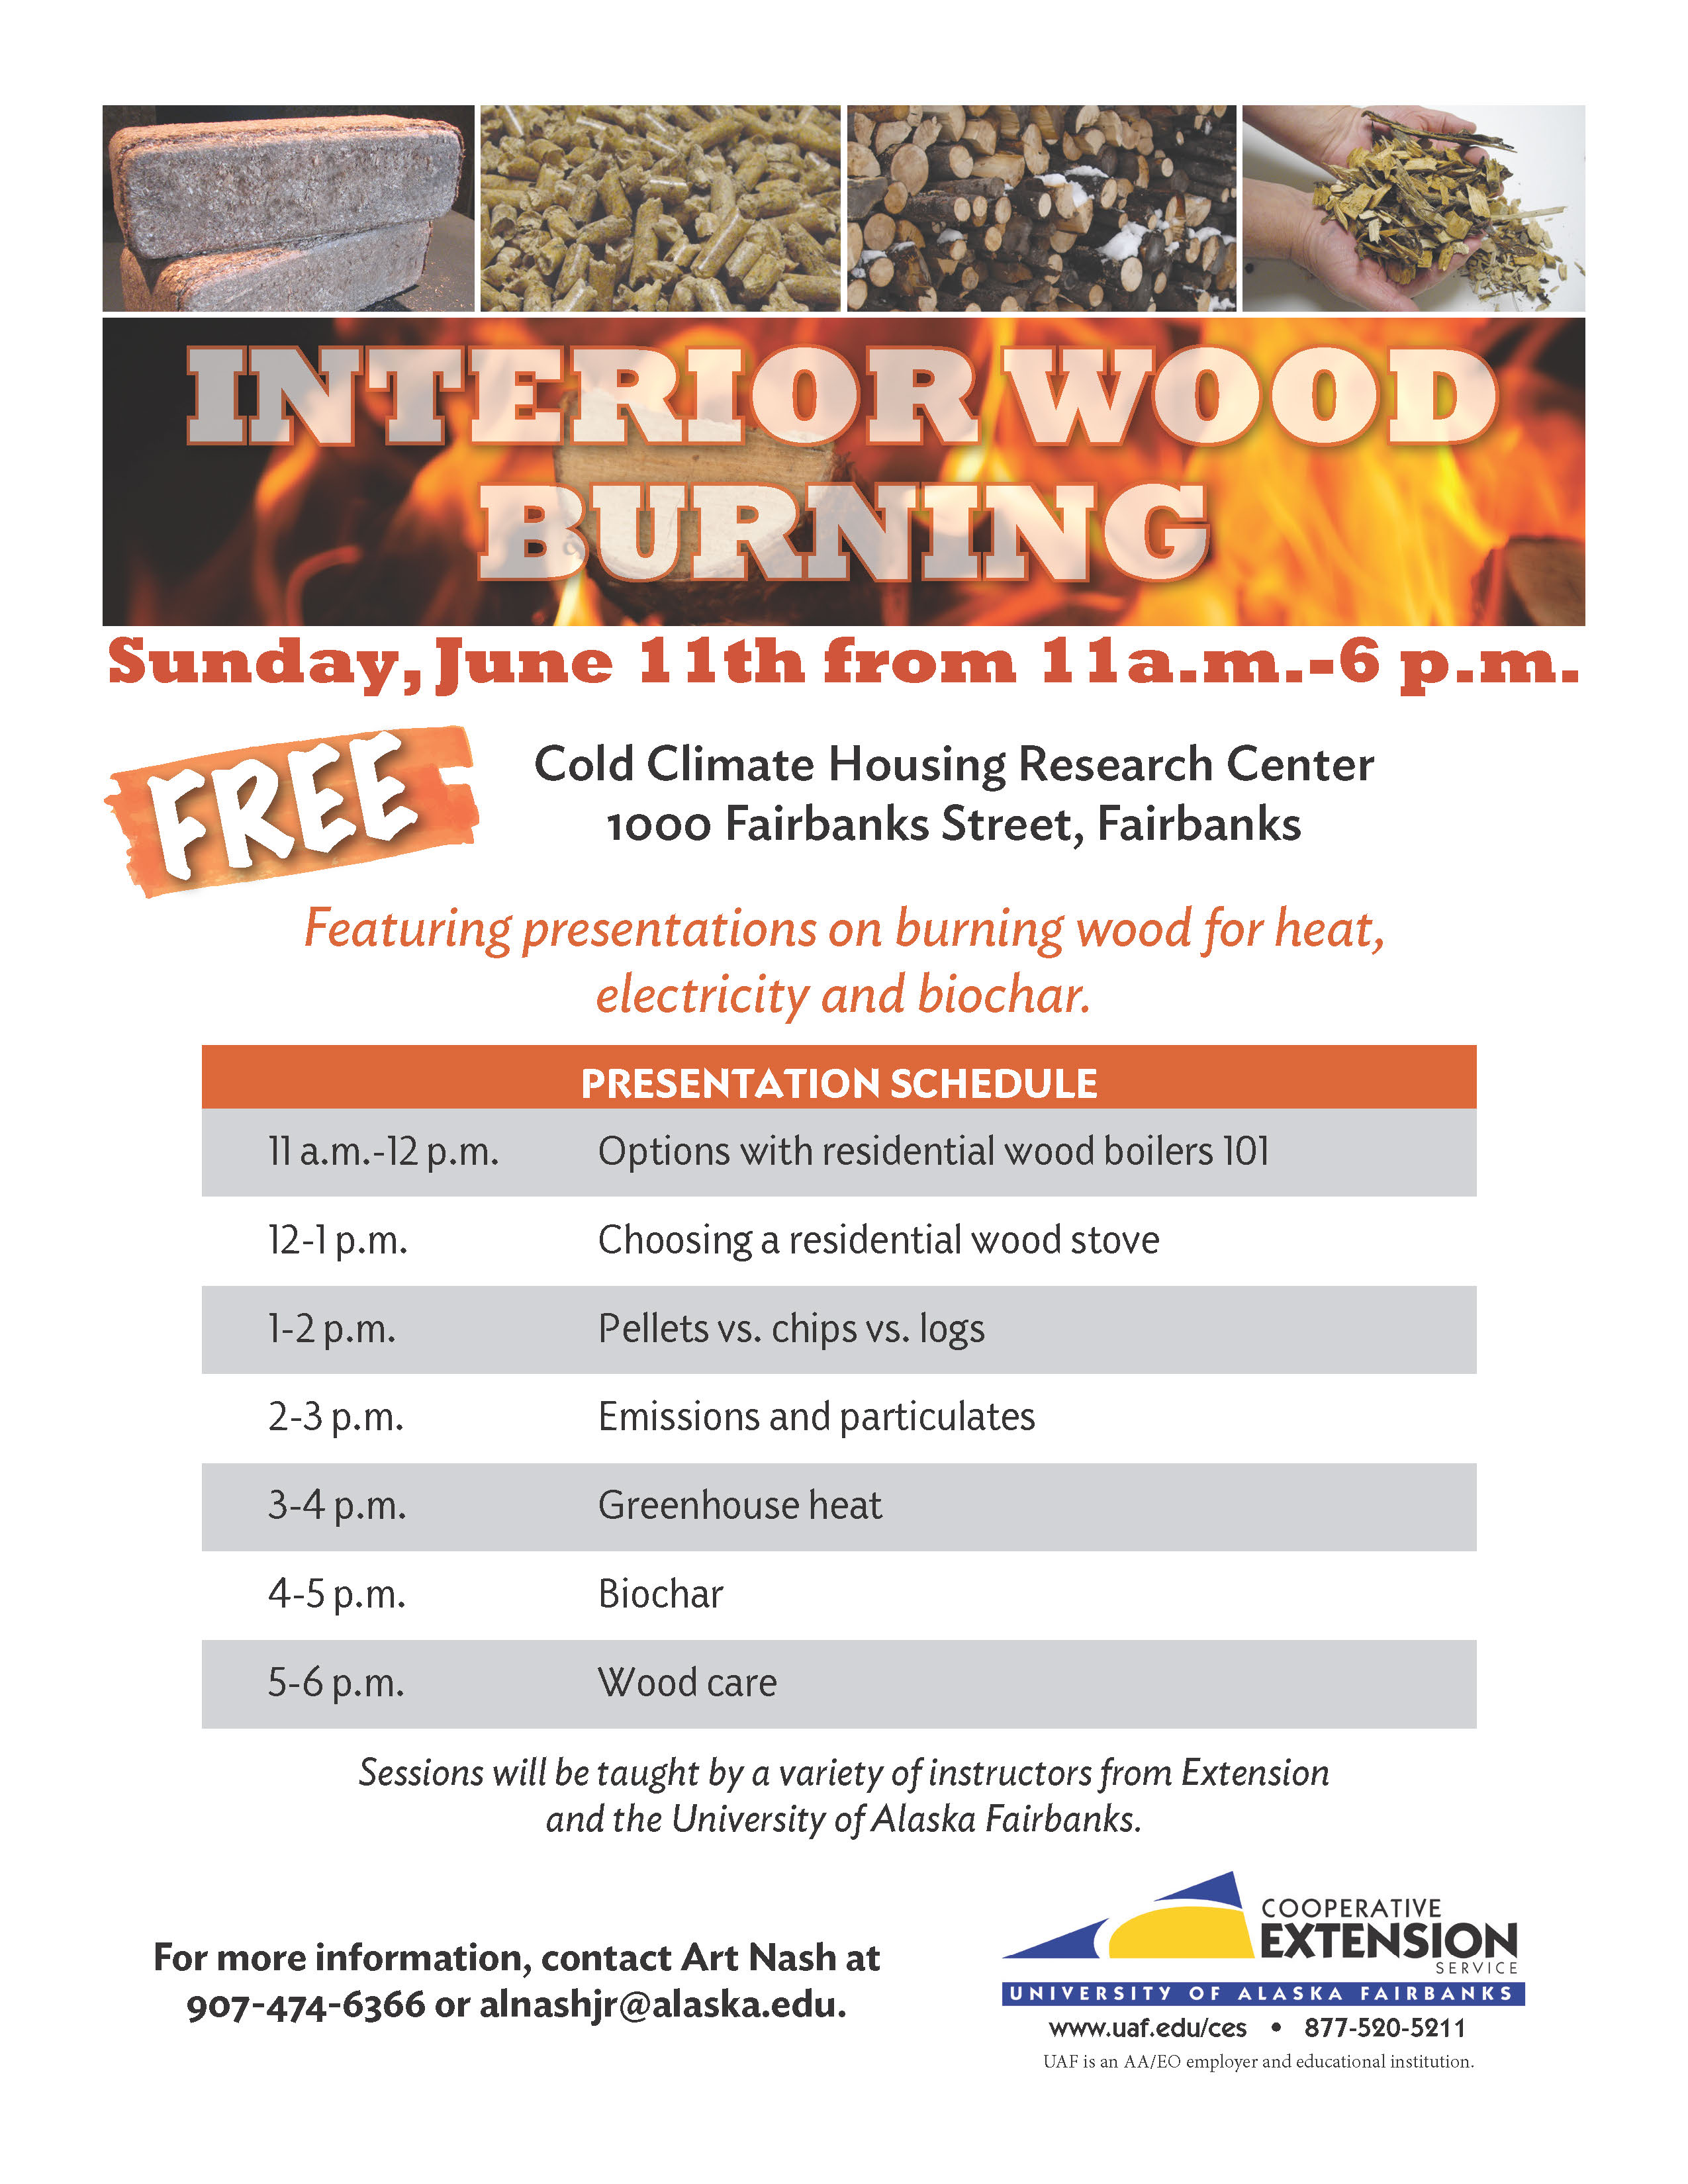 Interior Wood Burning Symposium in Fairbanks June 11th